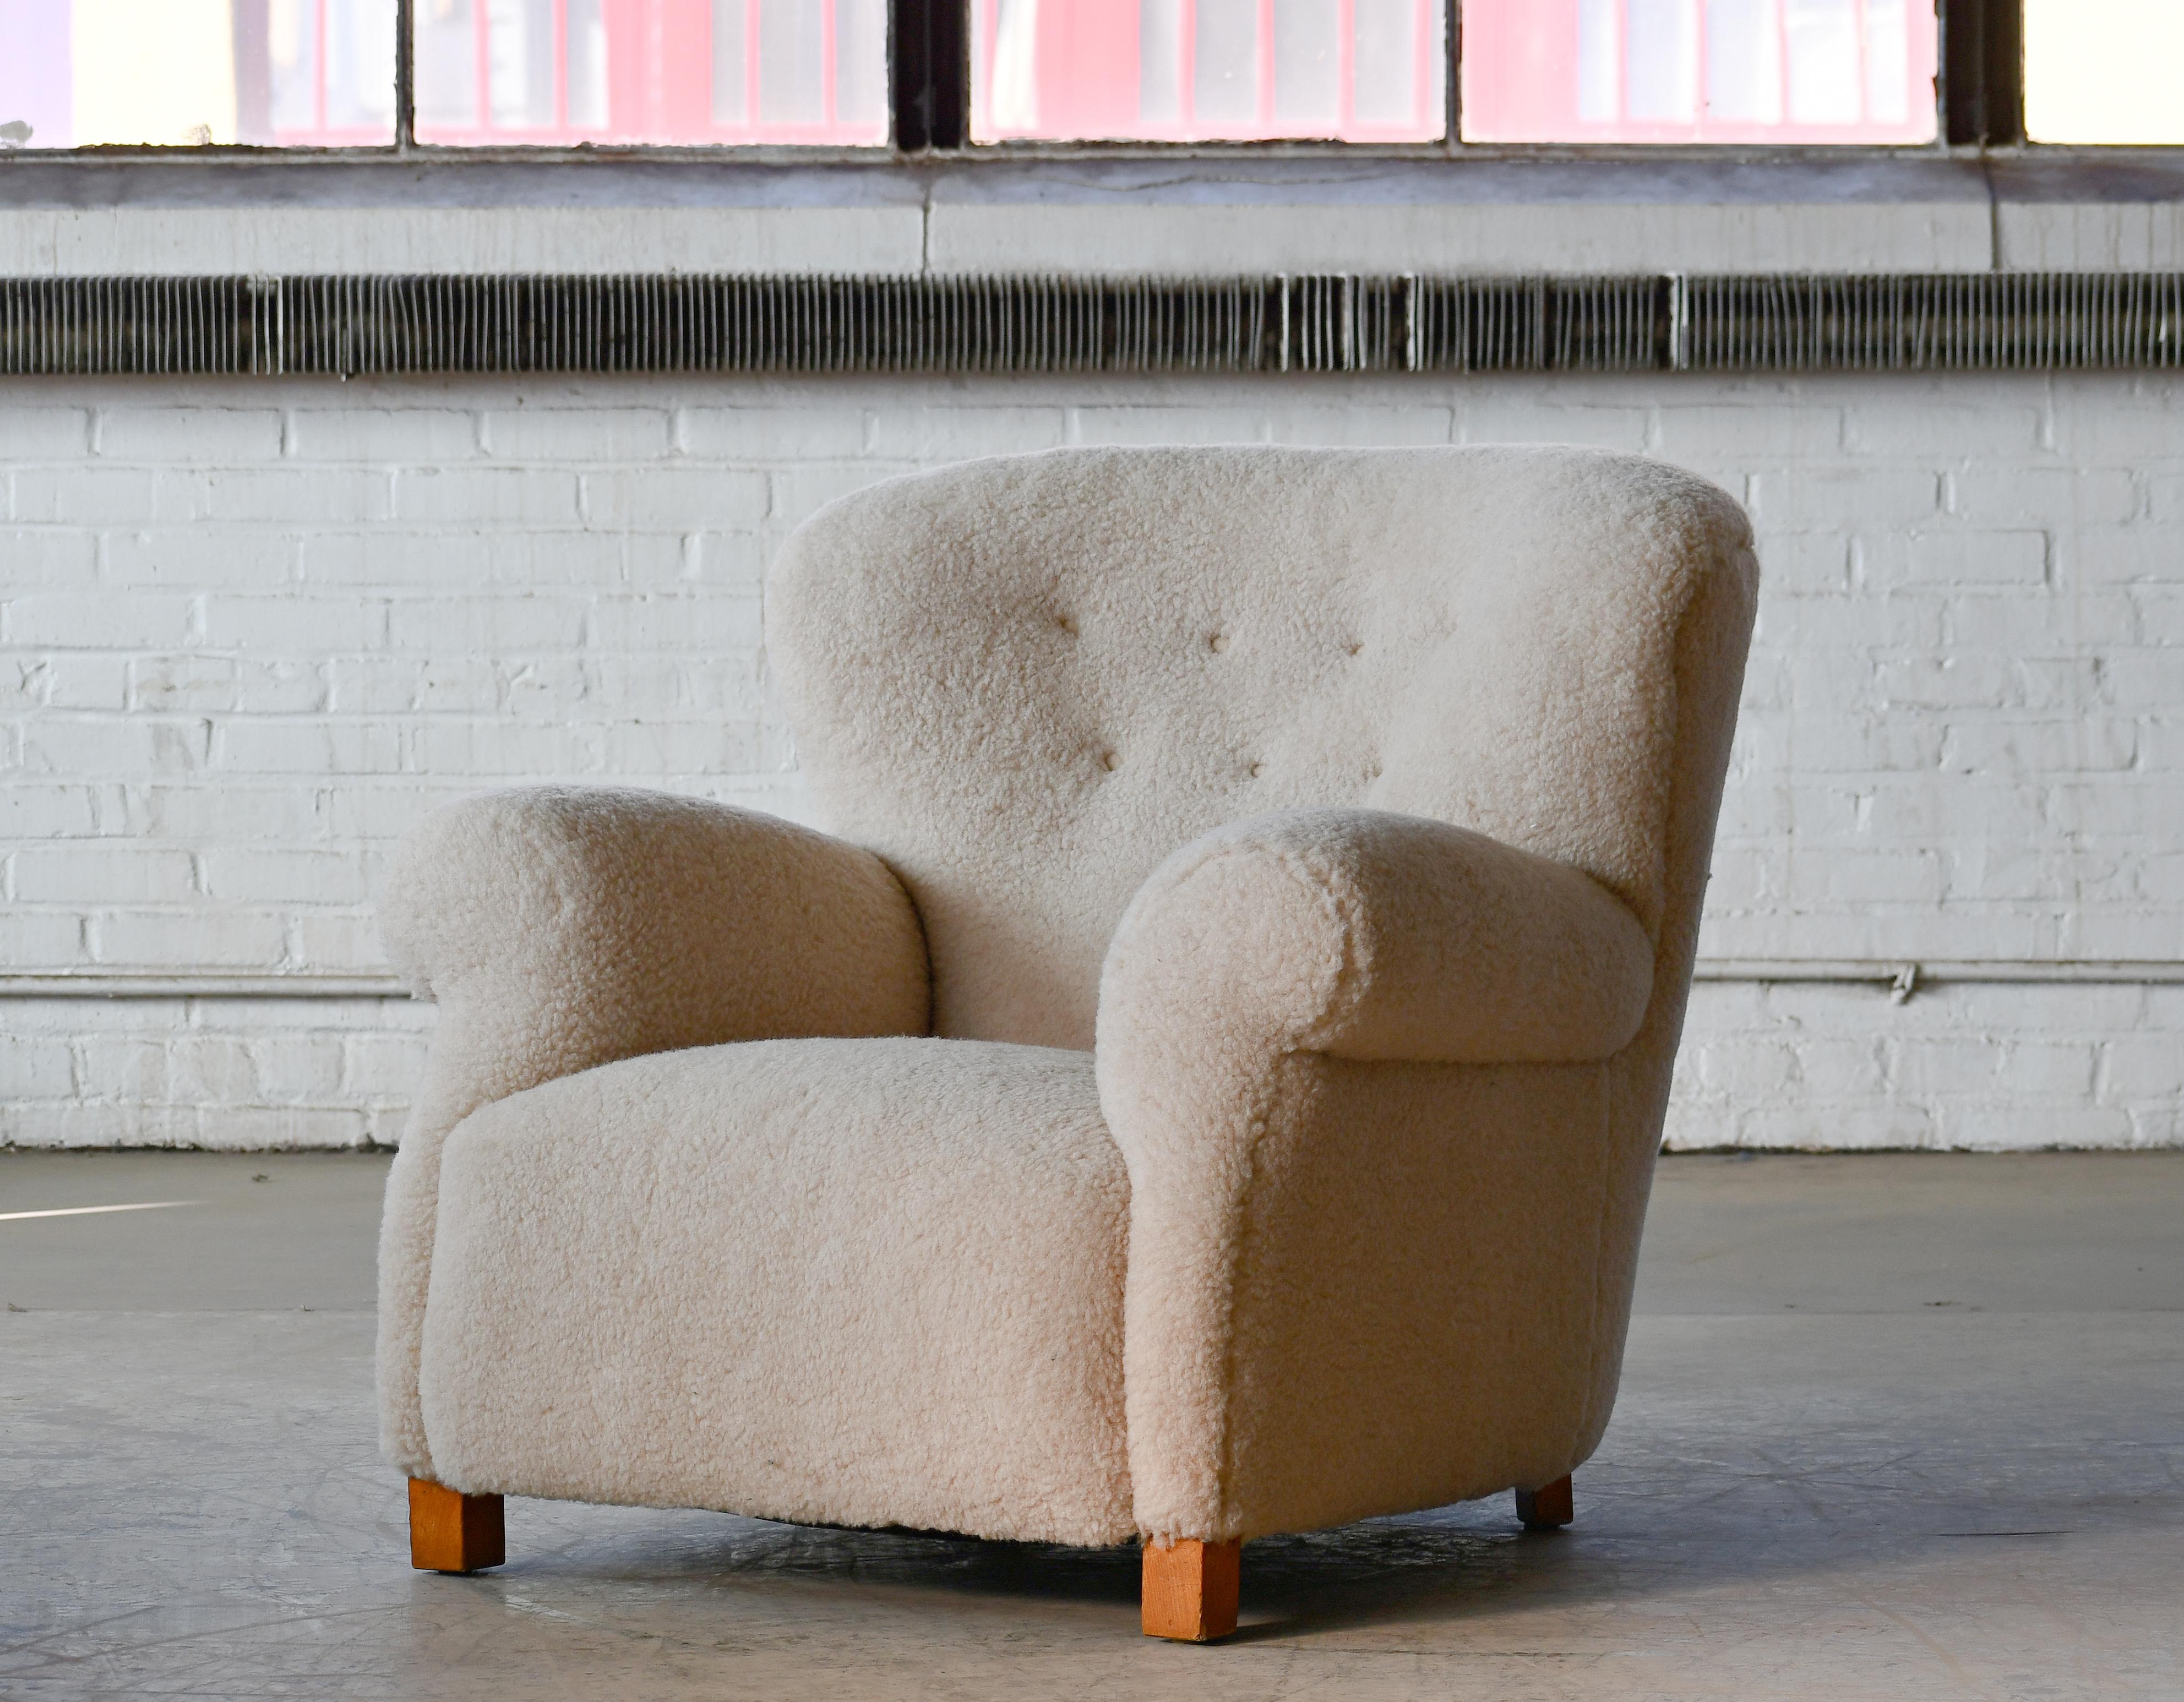 Sublime fauteuil club lounge modèle 1518 à grande échelle fabriqué par Fritz Hansen à la fin des années 1930 ou au début des années 1940. Les proportions dramatiques sont basses et larges. Dossier tufté lisse. Superbement confortable, la chaise a